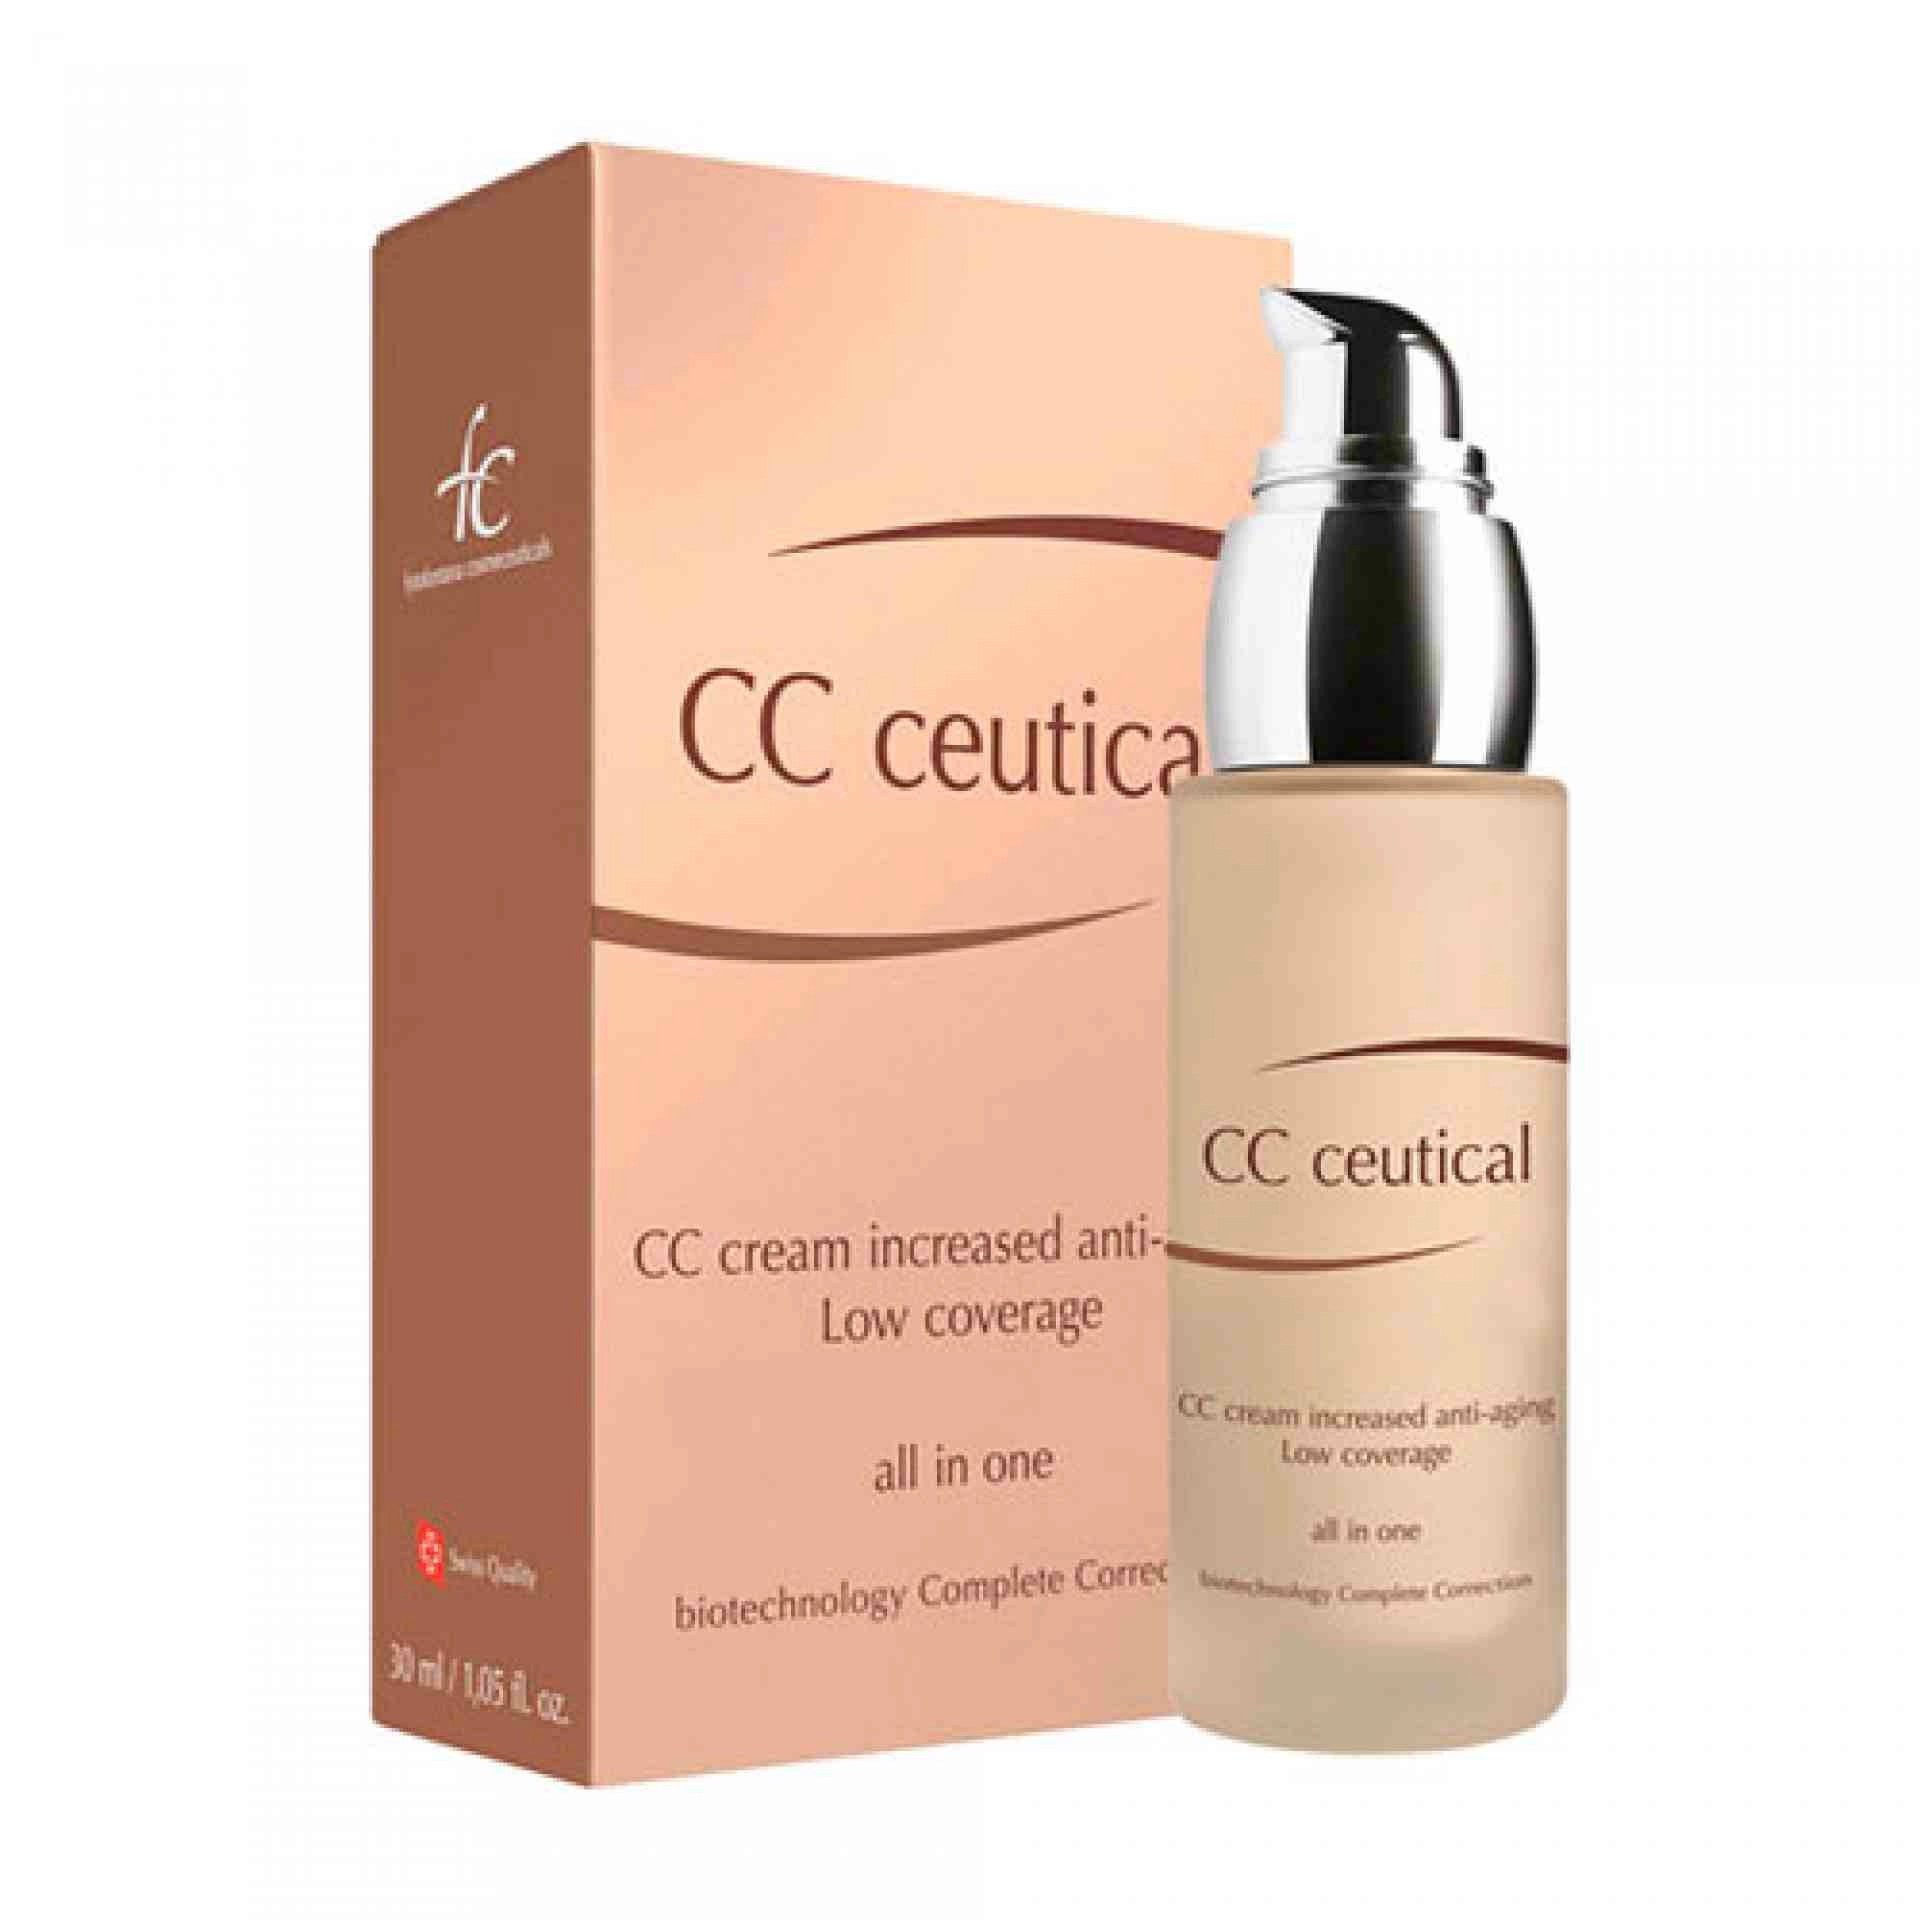 CC Ceutical - Cream Increased Anti-aging | Crema antiedad 30ml - Fytofontana Cosmeceuticals ®